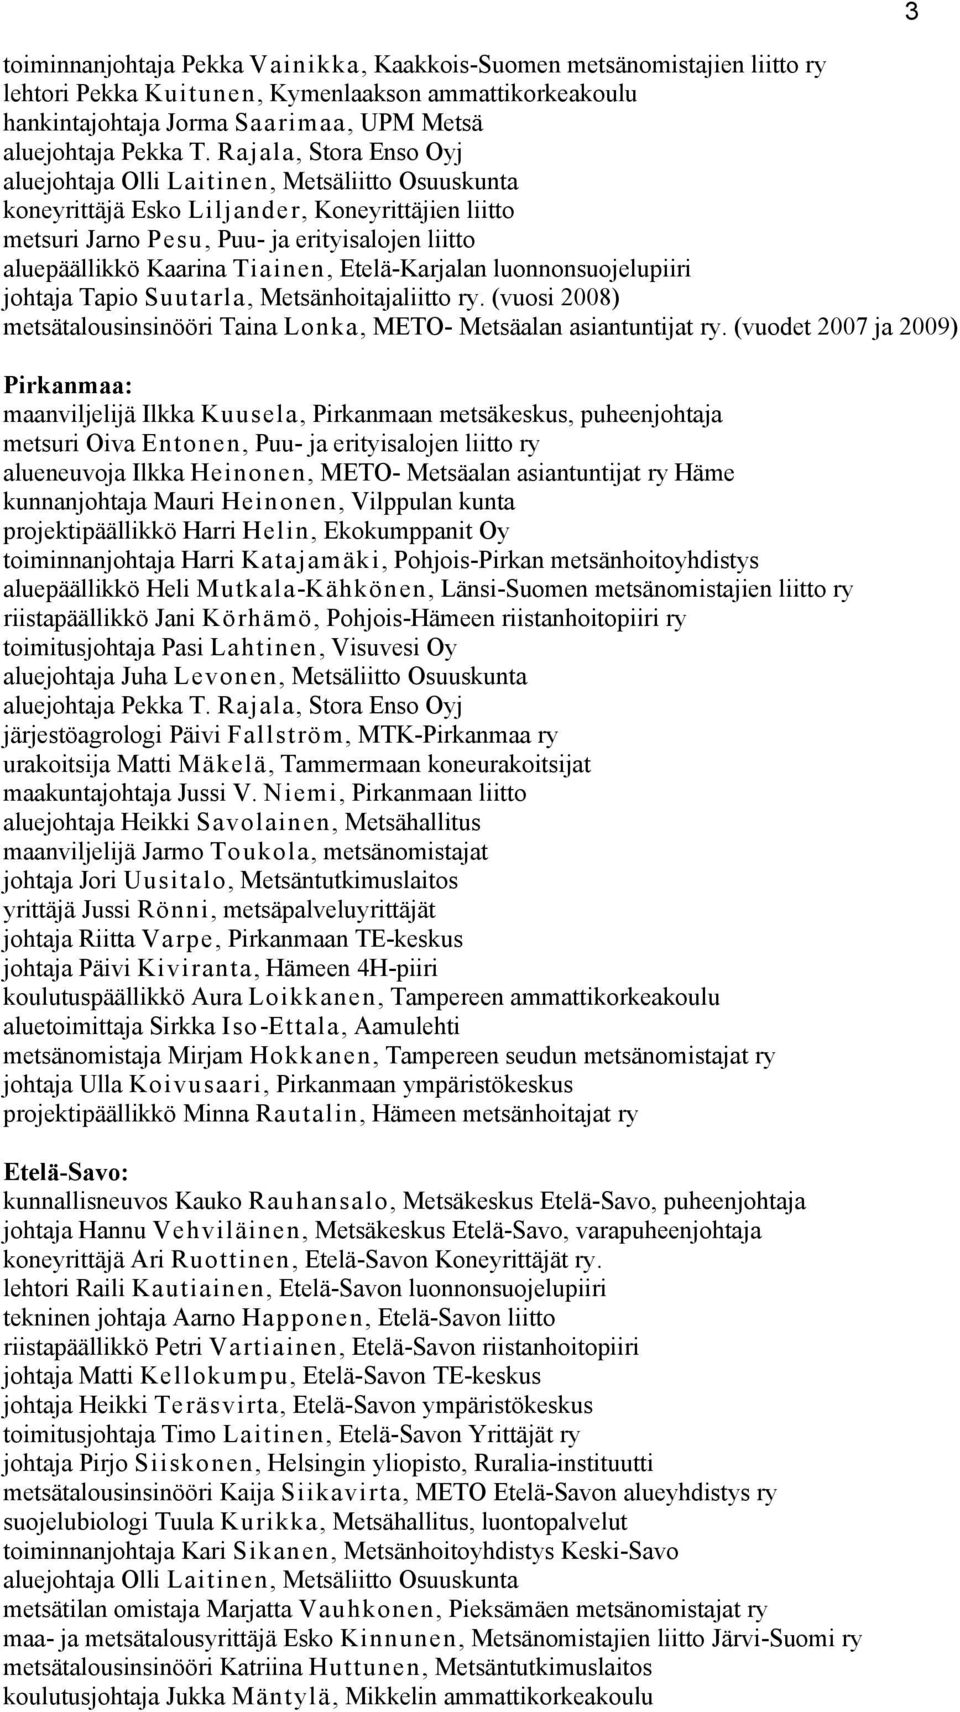 Tiainen, Etelä-Karjalan luonnonsuojelupiiri johtaja Tapio Suutarla, Metsänhoitajaliitto ry. (vuosi 2008) metsätalousinsinööri Taina Lonka, METO- Metsäalan asiantuntijat ry.